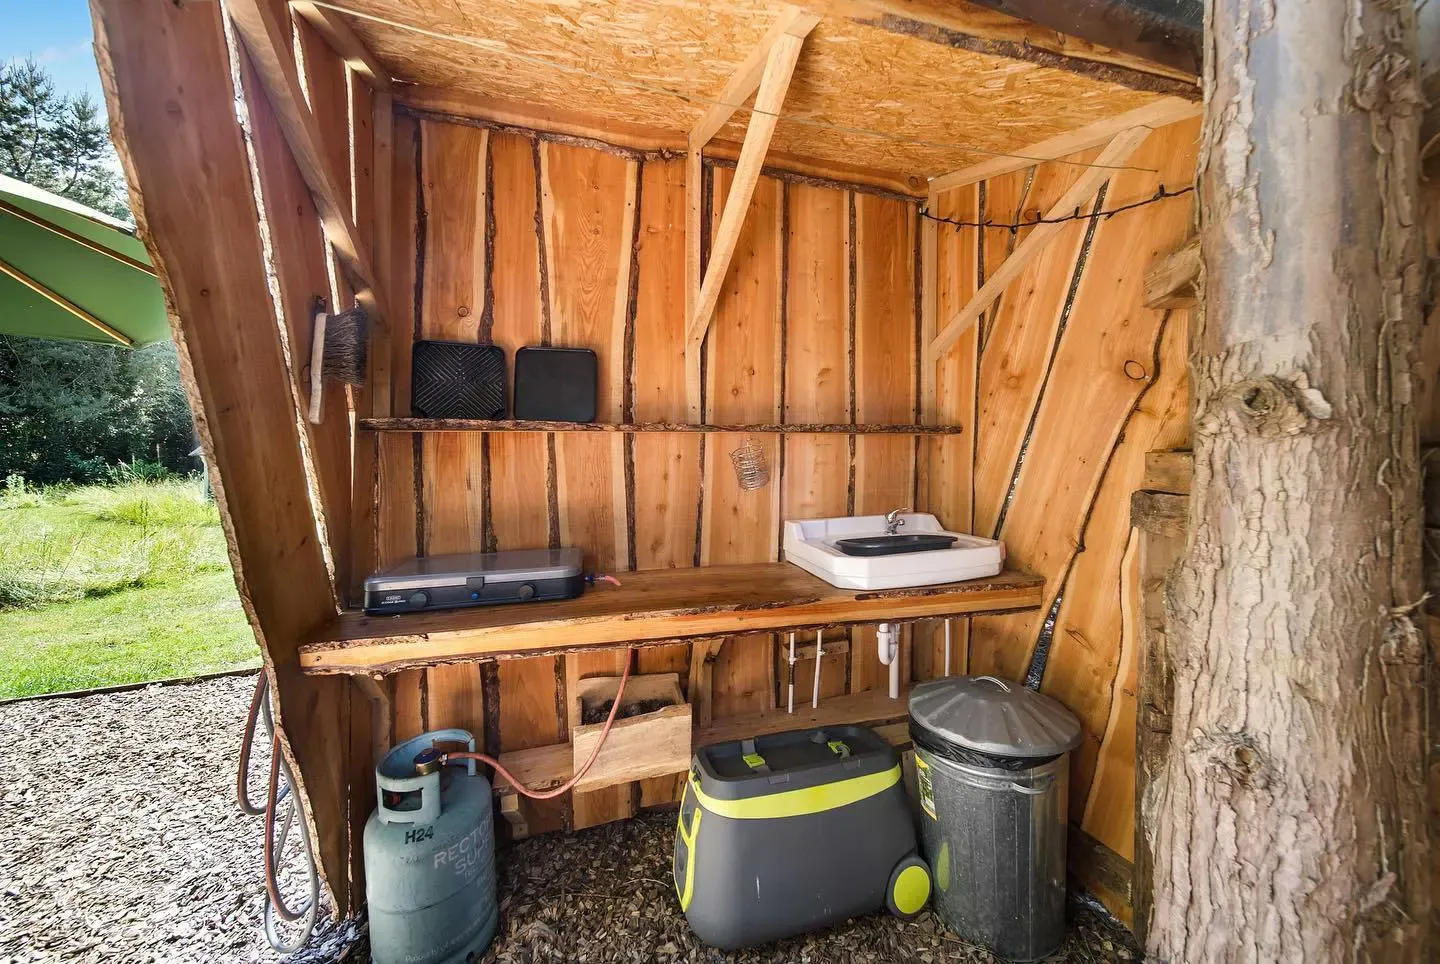 Private kitchen shelter